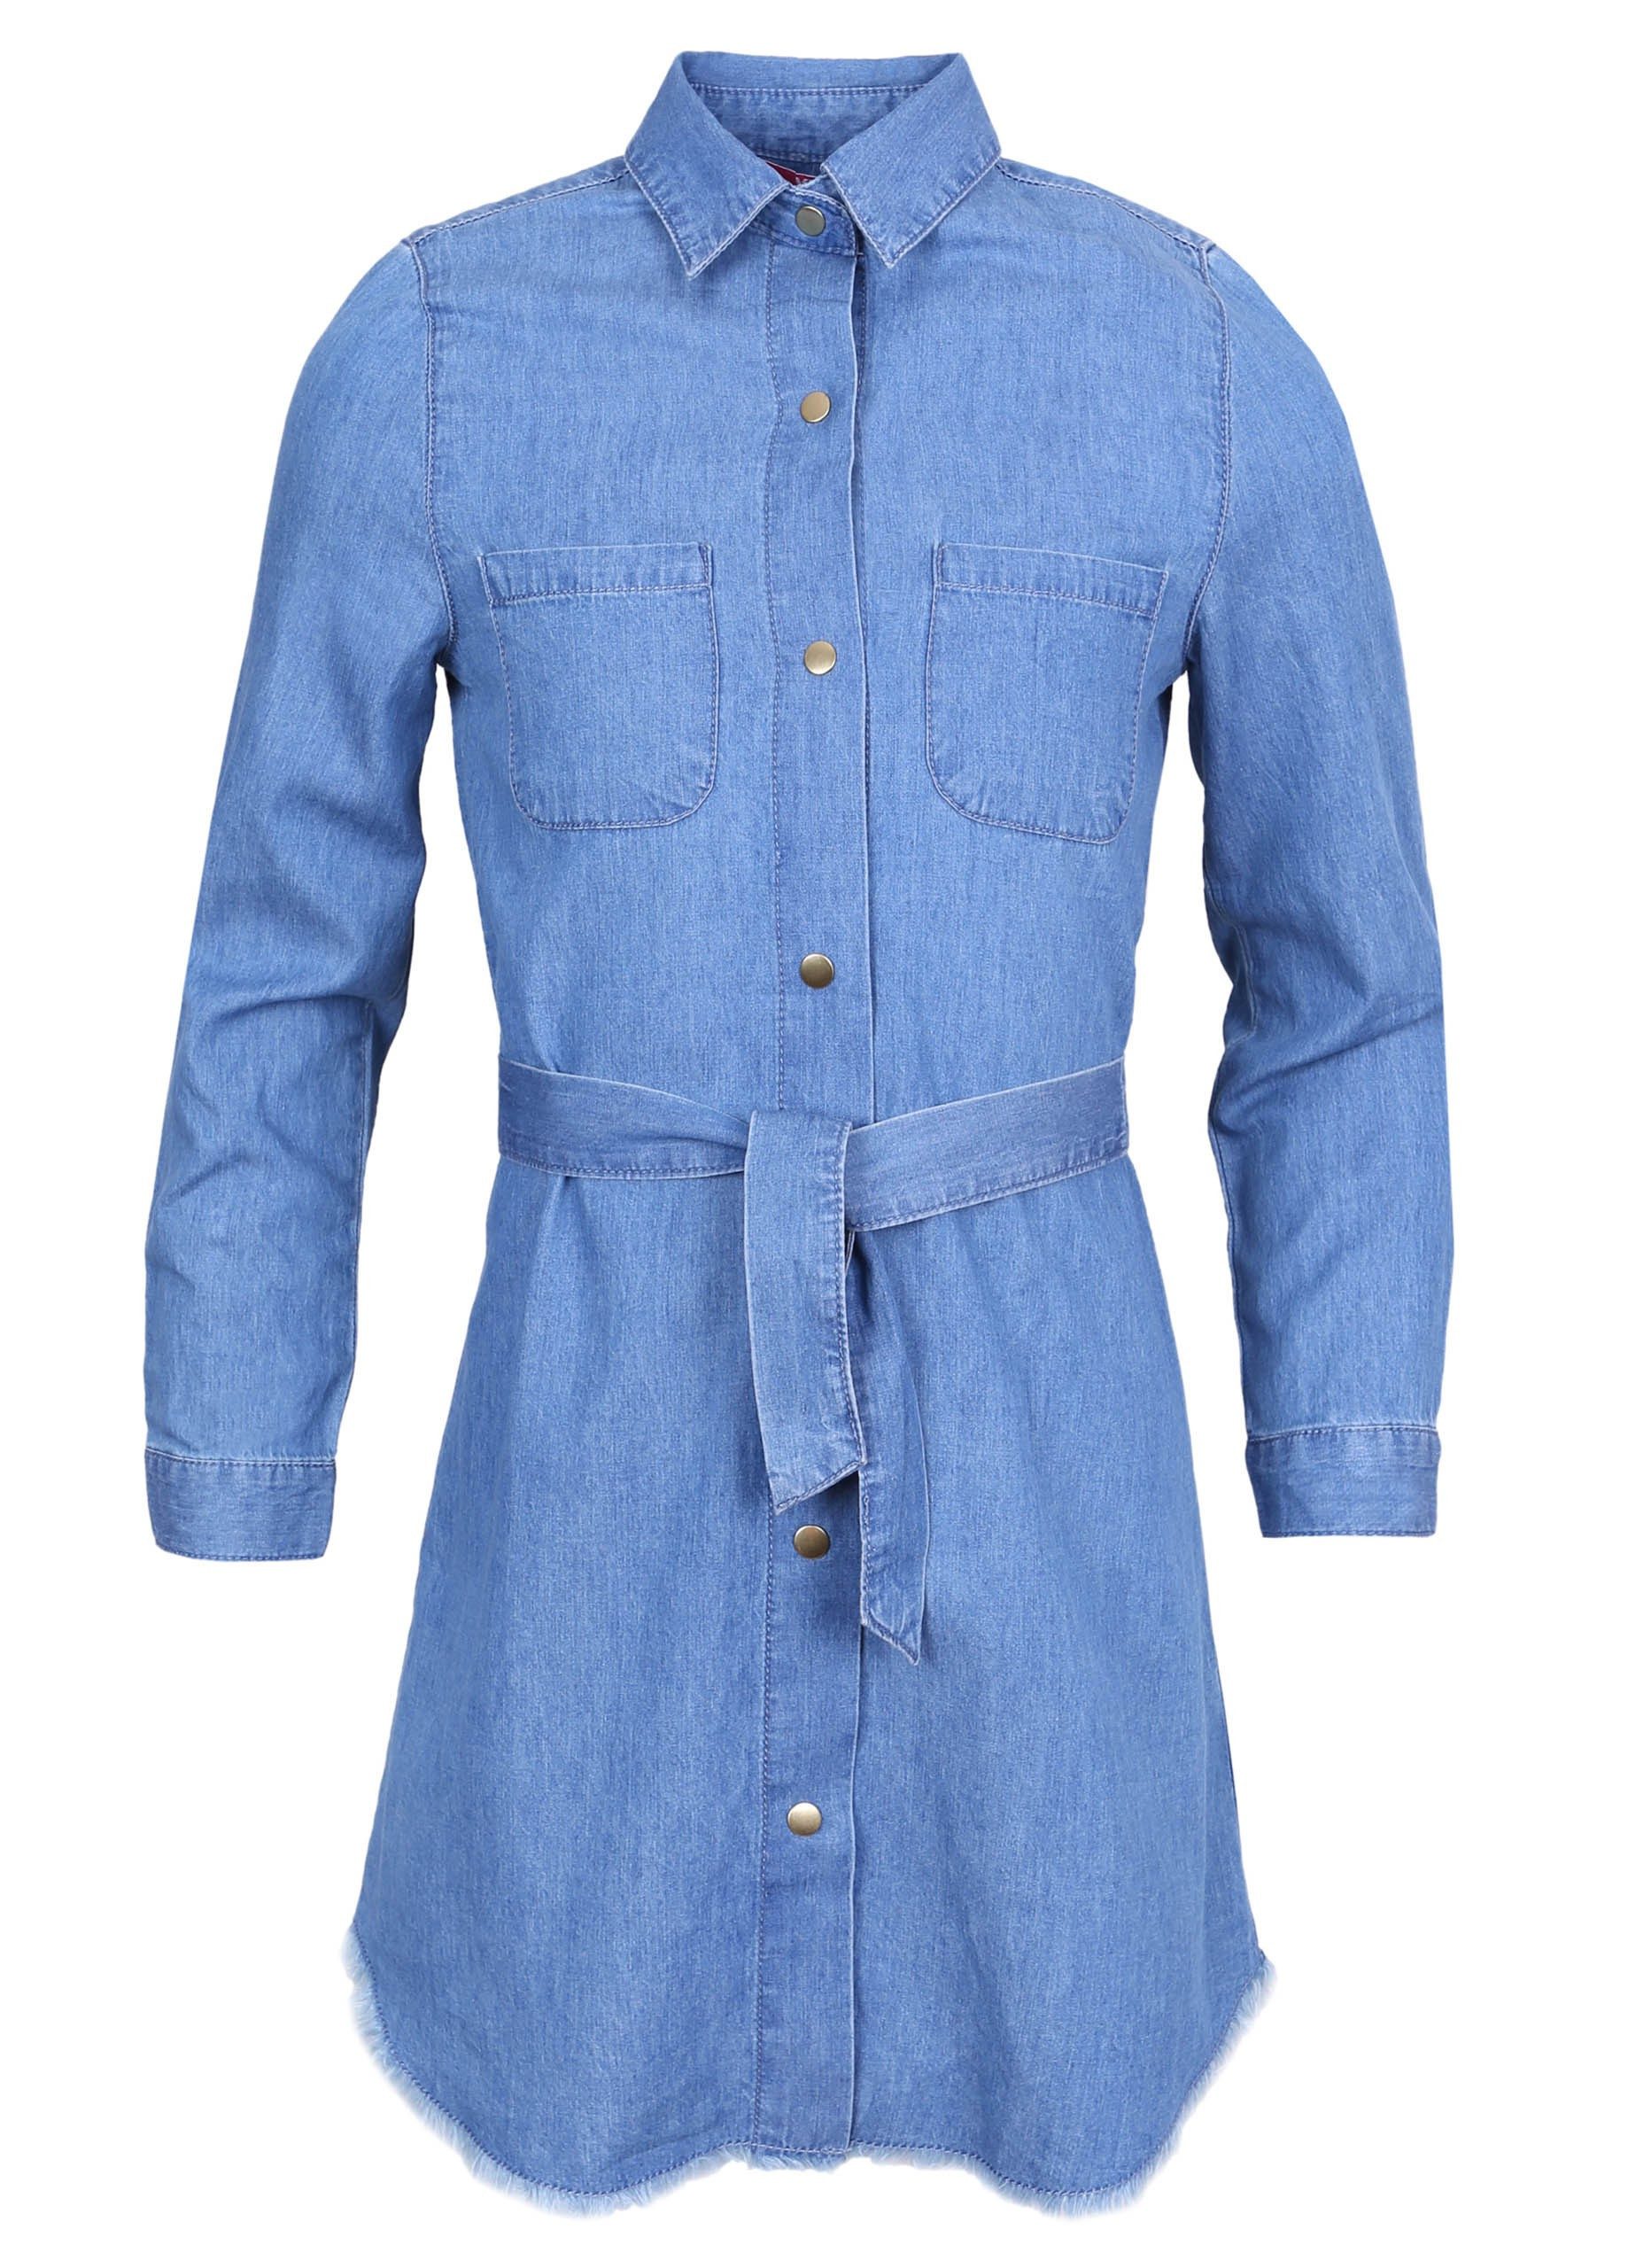 Sarcia.eu Jeanskleid Blaues Jeanskleid mit Knöpfen T-Shirt-Kleid Druckknöpfe 7-8 Jahre